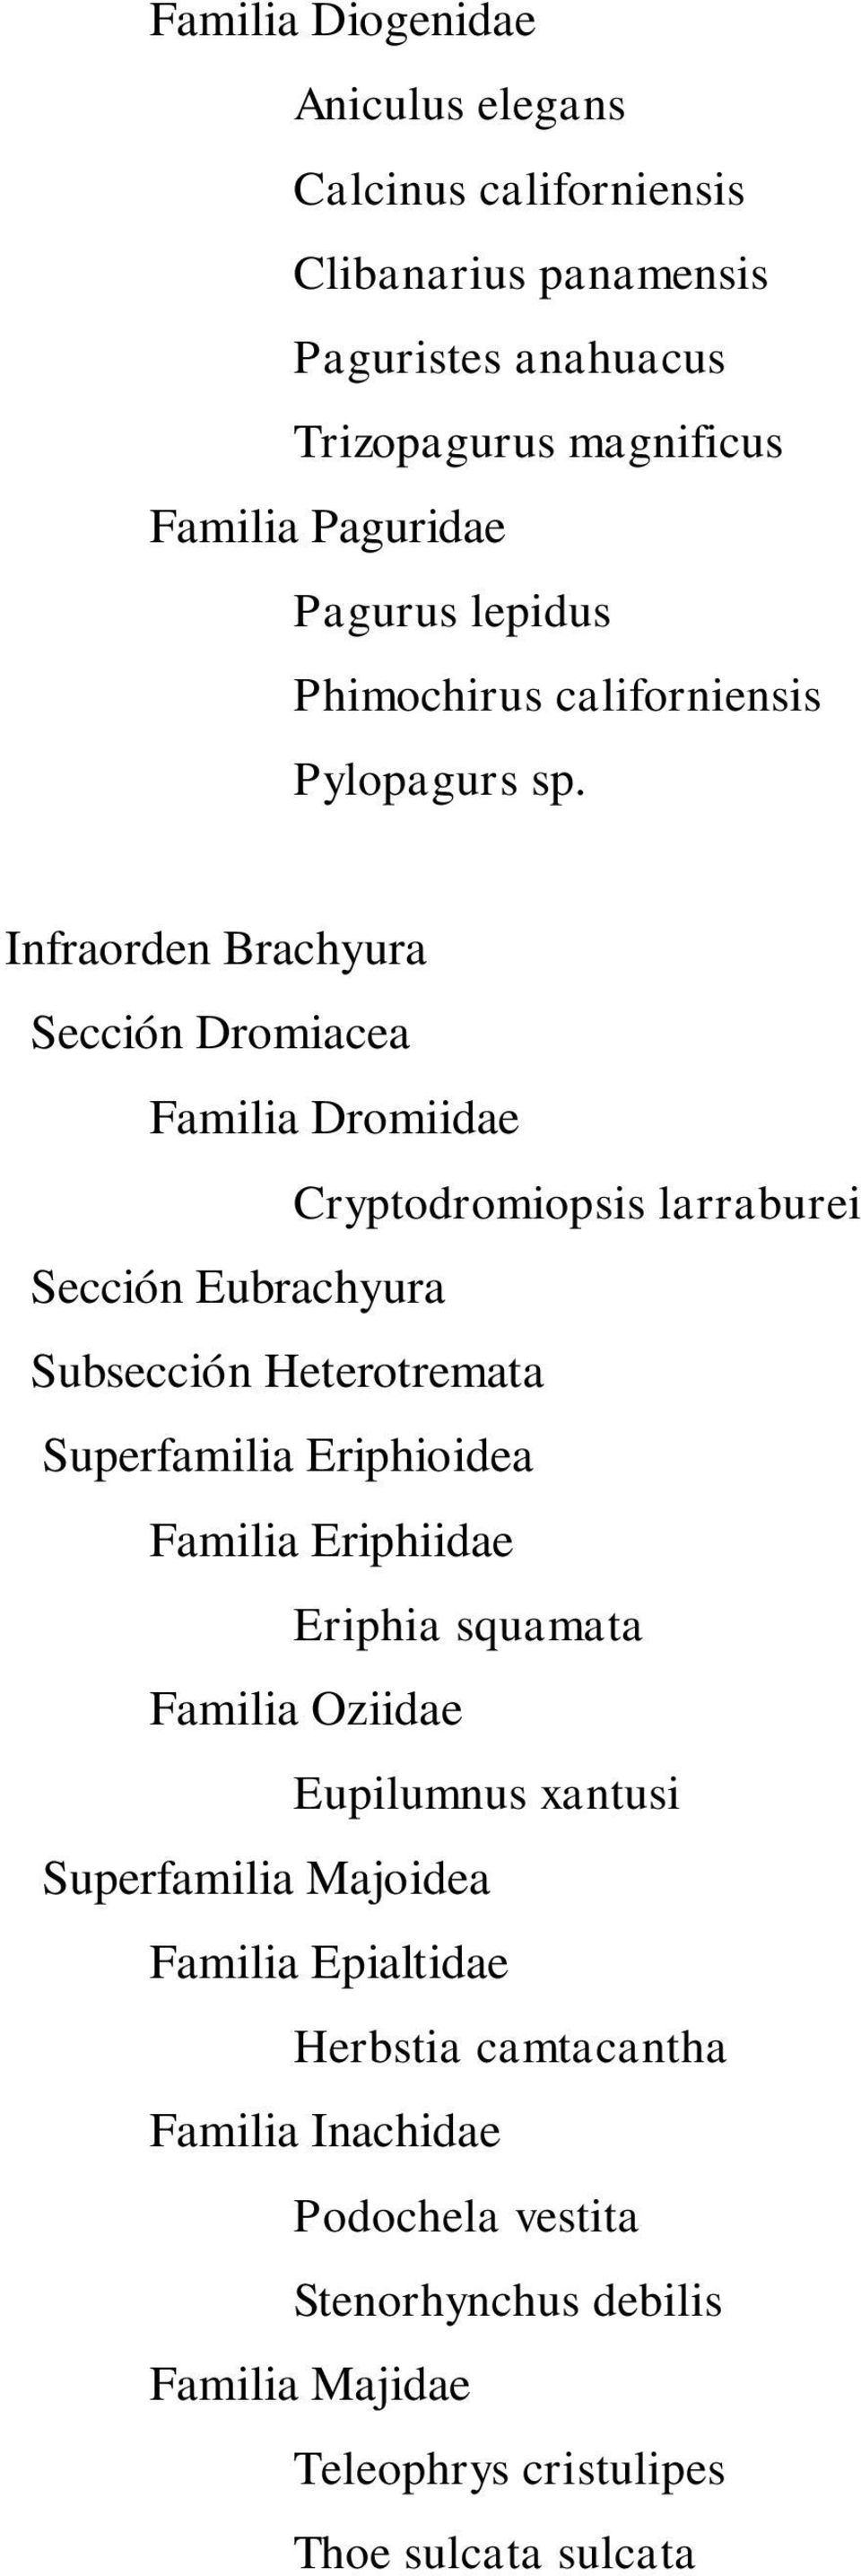 Infraorden Brachyura Sección Dromiacea Familia Dromiidae Cryptodromiopsis larraburei Sección Eubrachyura Subsección Heterotremata Superfamilia